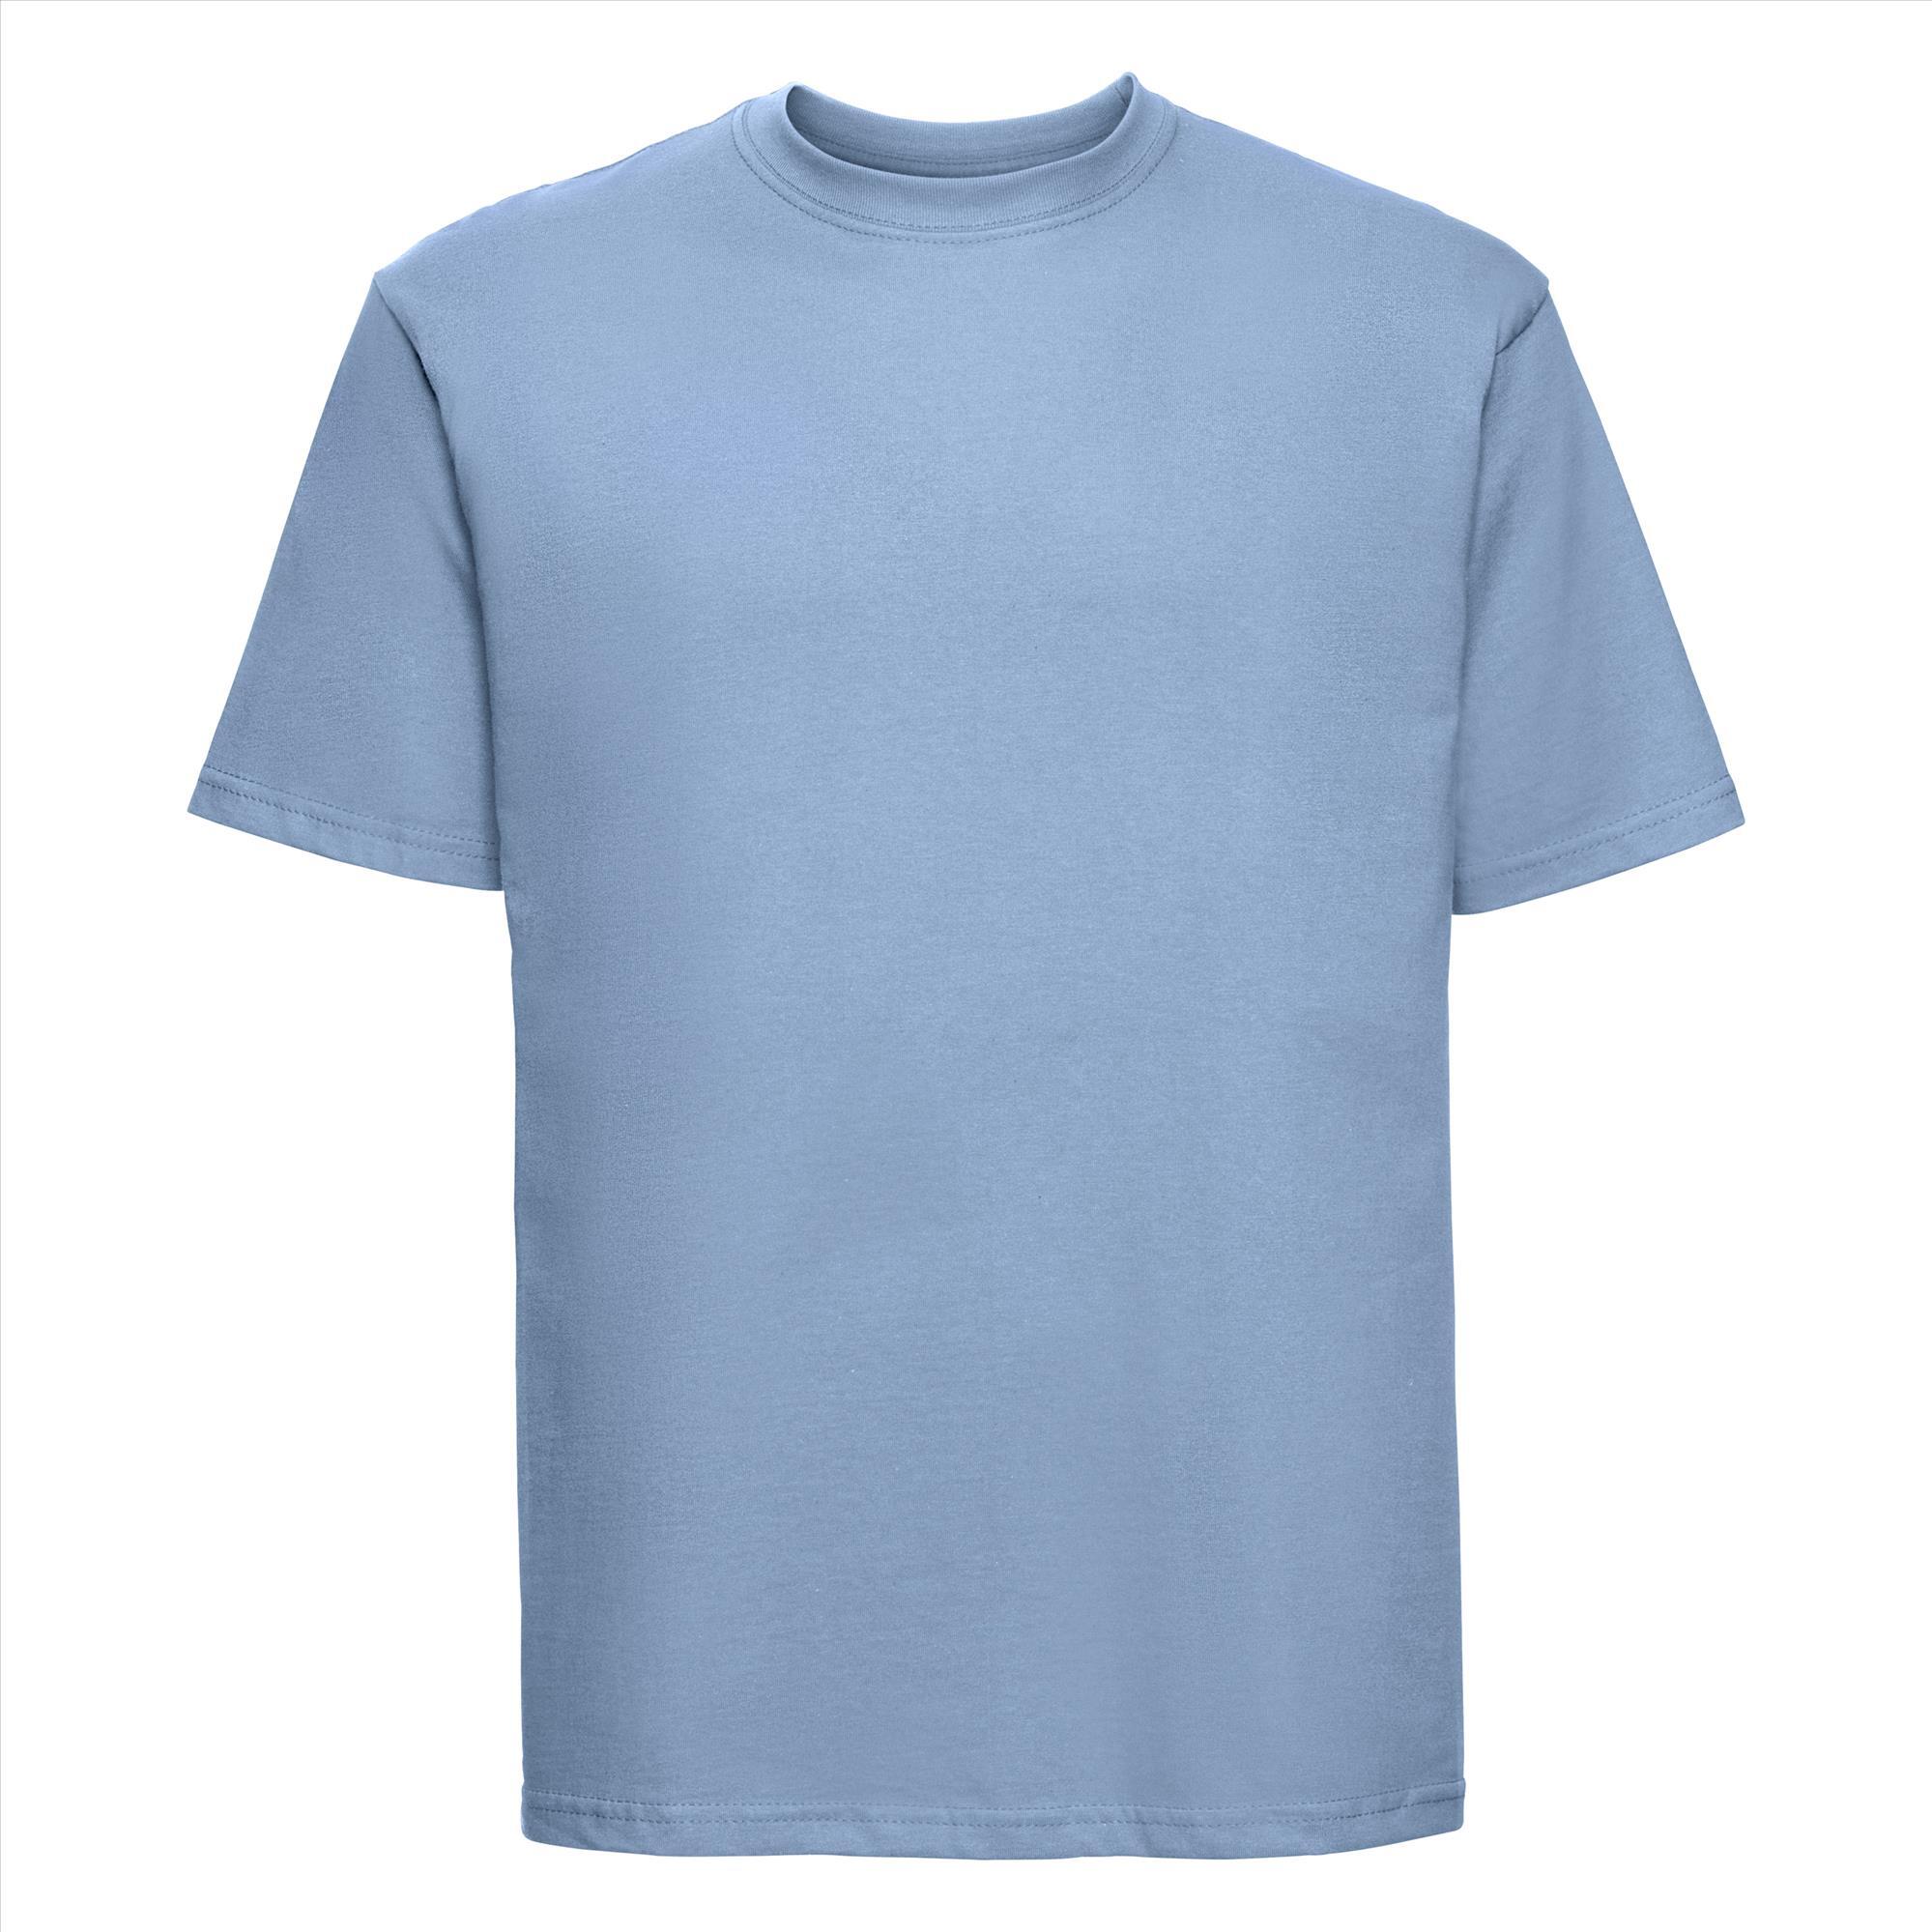 T-shirt voor mannen sky blauw te personaliseren te bedrukken